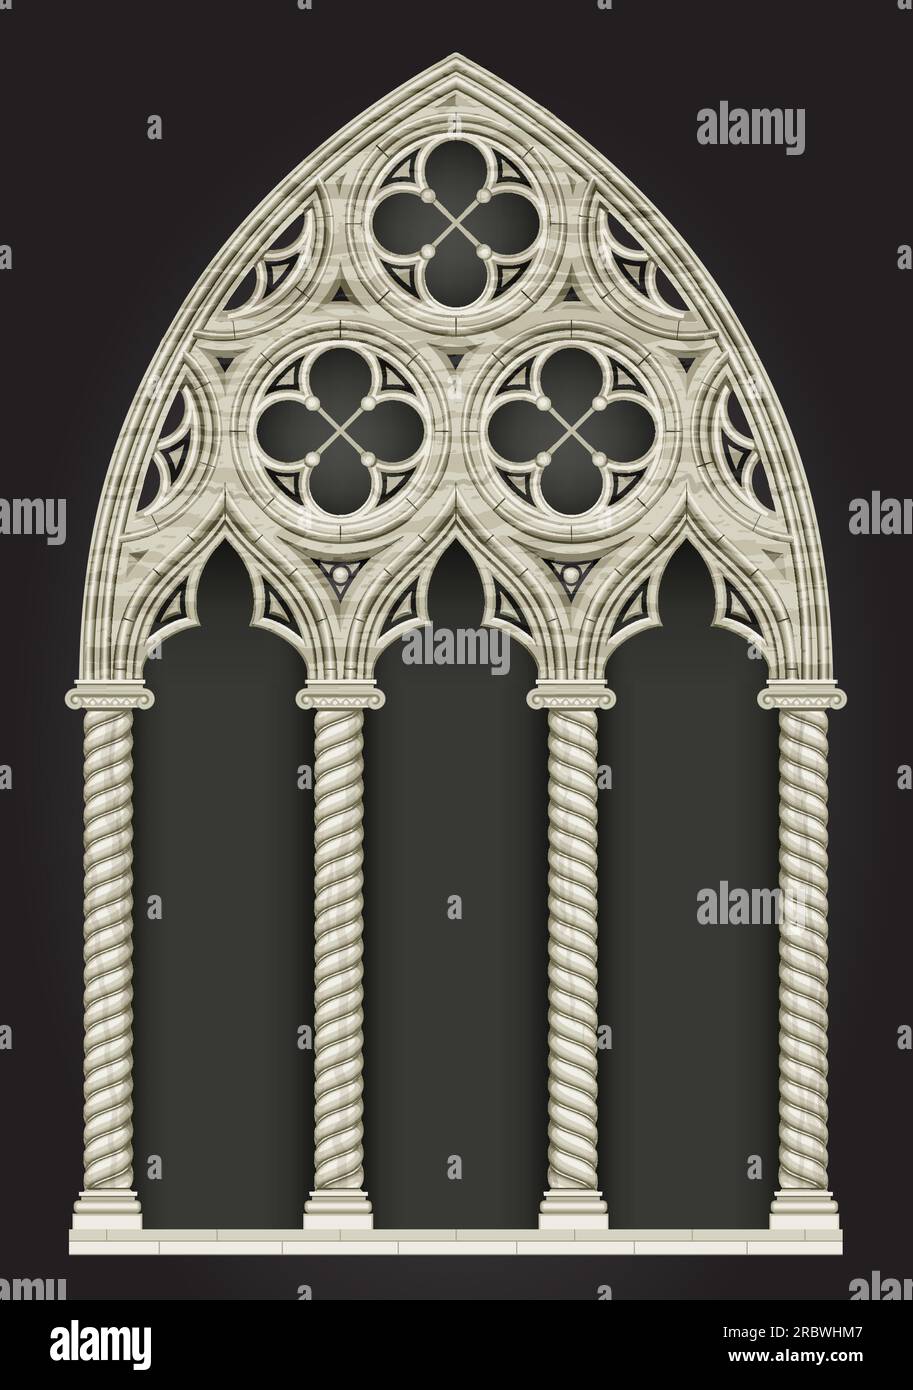 Realistische gotische Kathedrale, mittelalterliche Buntglasfenster und Steinbogen. Hintergrund oder Textur. Architekturelement Stock Vektor